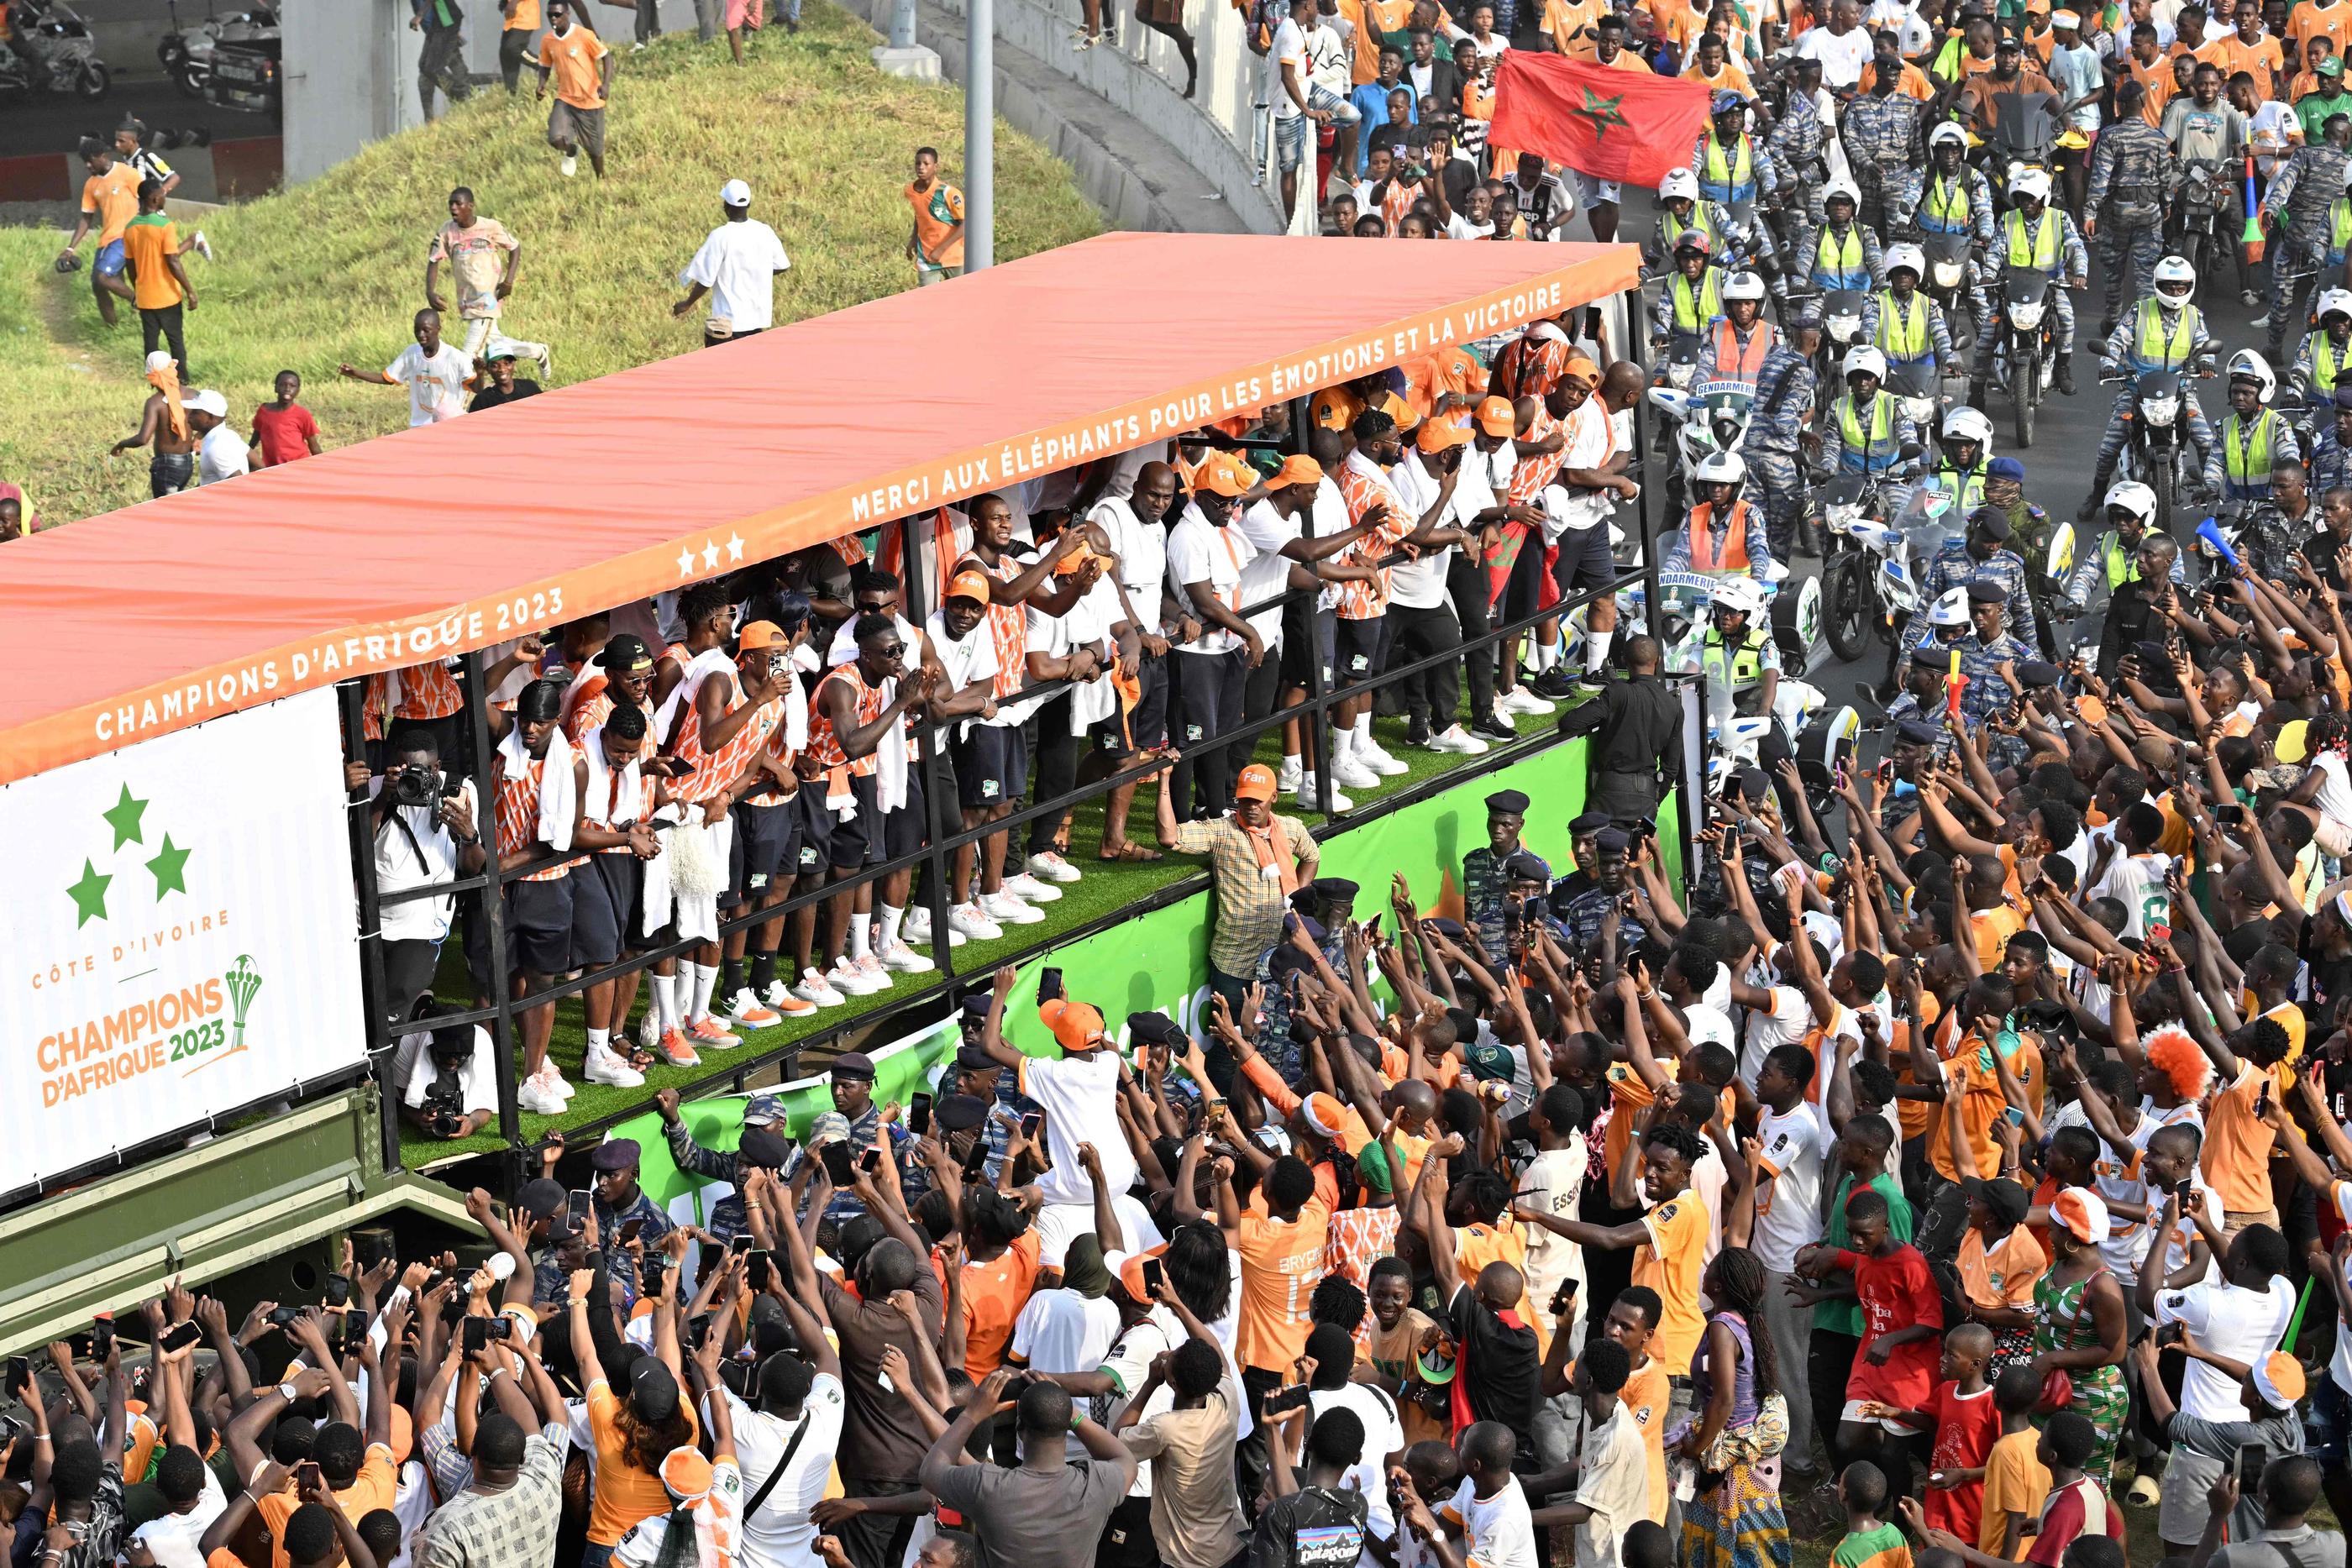 Des millions d'ivoiriens sont venus féliciter et remercier les nouveaux champions d'Afrique ce lundi lors de la parade à Abidjan. AFP/Sia Kambou